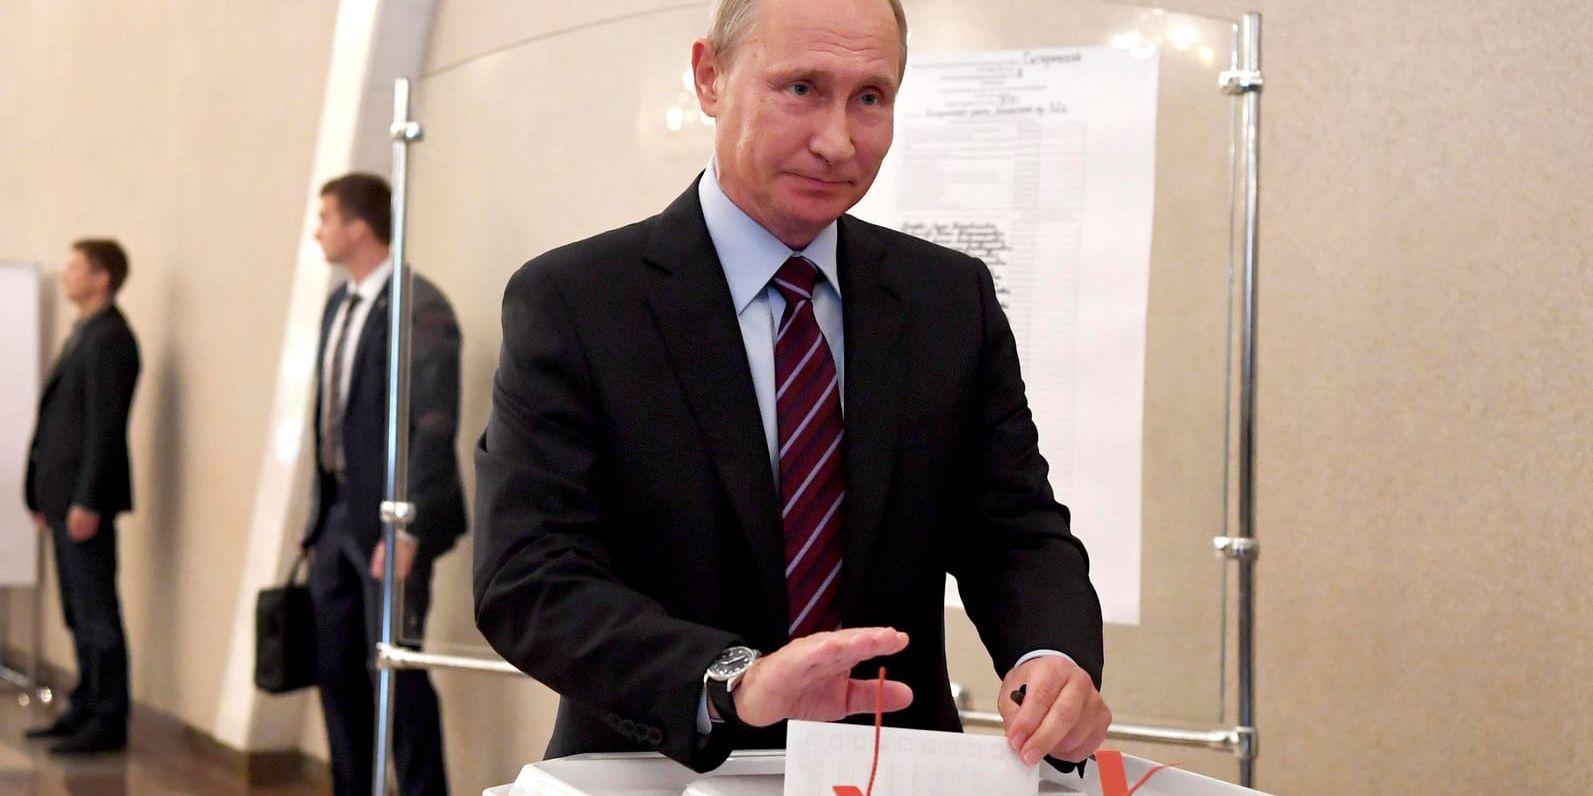 Kandidater från Kremls maktparti Enade Ryssland fick se sig slagna av den liberala oppositionen i flera valdistrikt i Moskva, bland annat i den valkrets där president Vladimir Putin röstade.